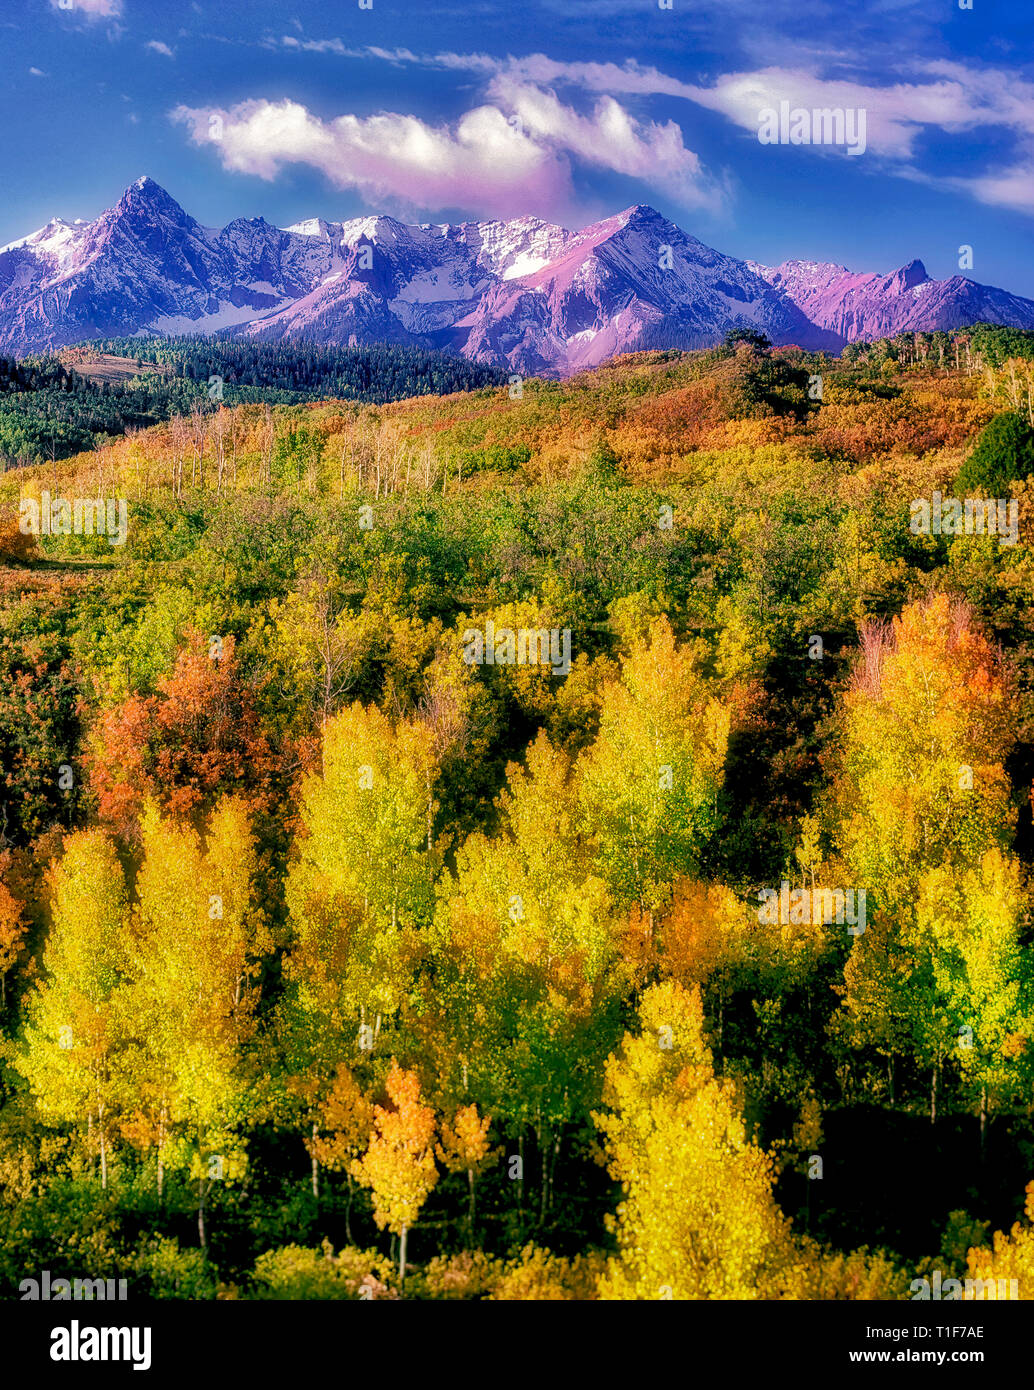 Les trembles dans la couleur de l'automne avec les montagnes de San Juan. Uncompahgre National forest, Colorado Banque D'Images